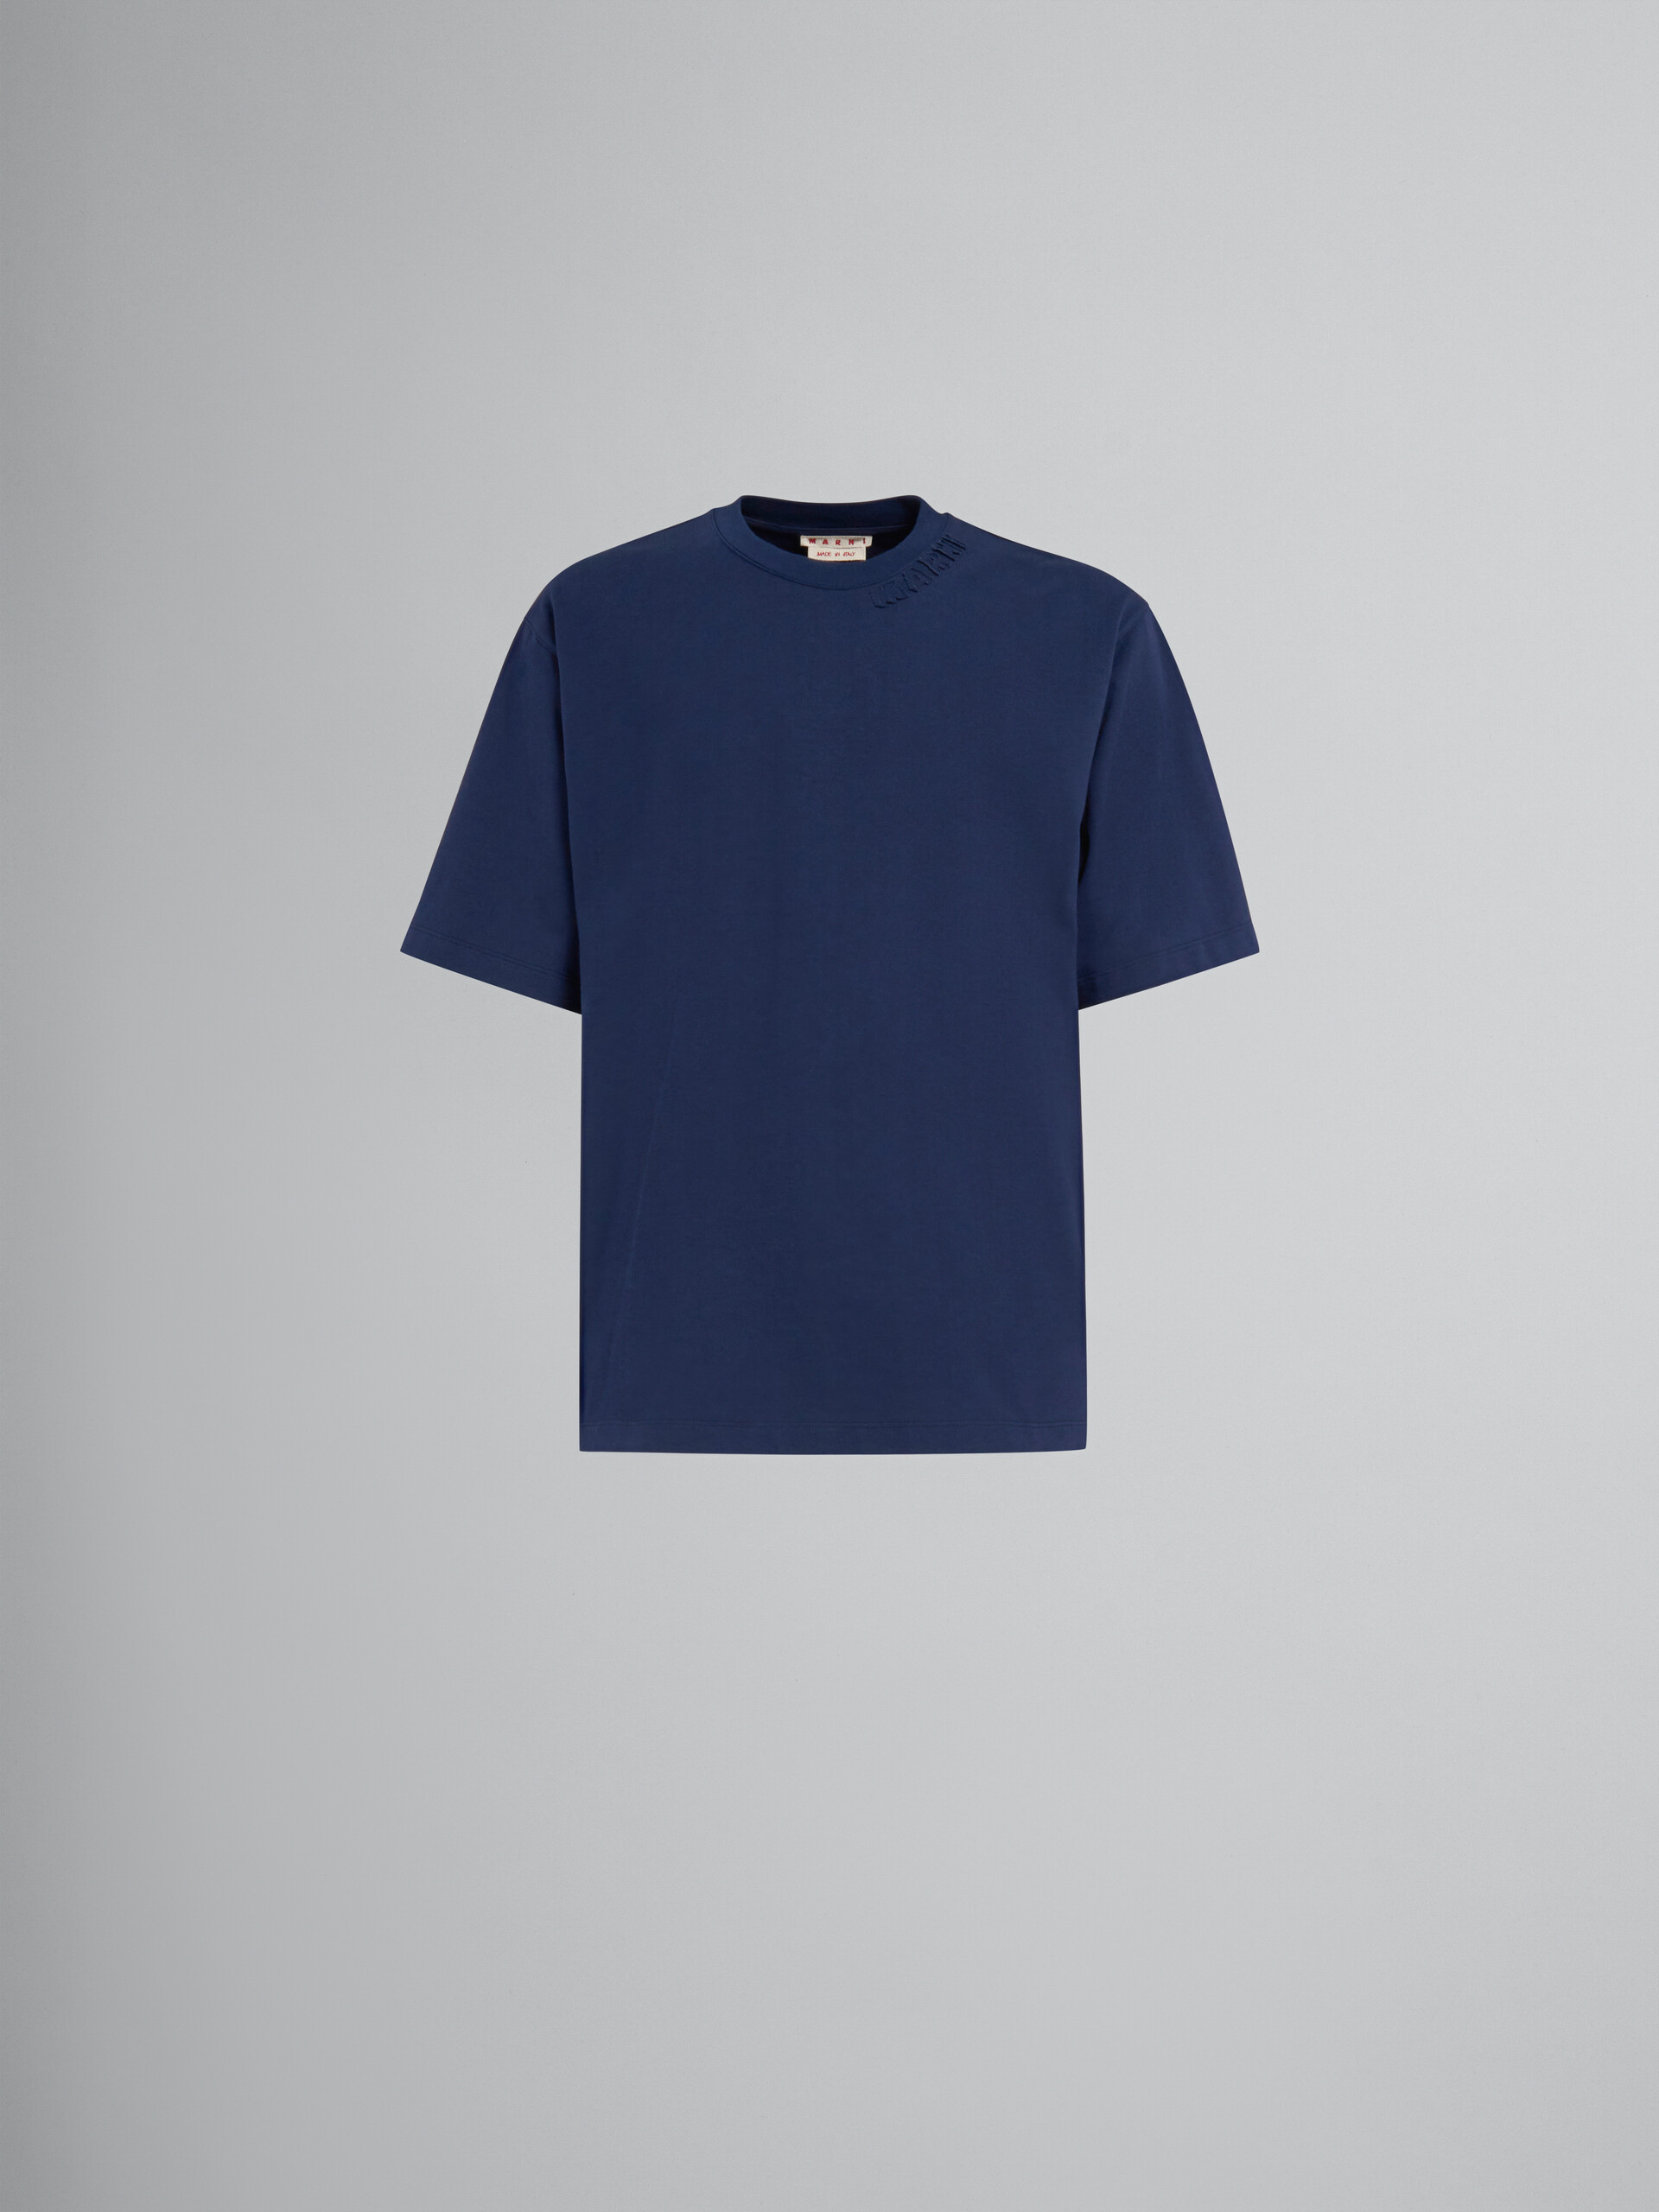 Blaues Oversize-T-Shirt aus Bio-Baumwolle mit Marni-Aufnähern - T-shirts - Image 1